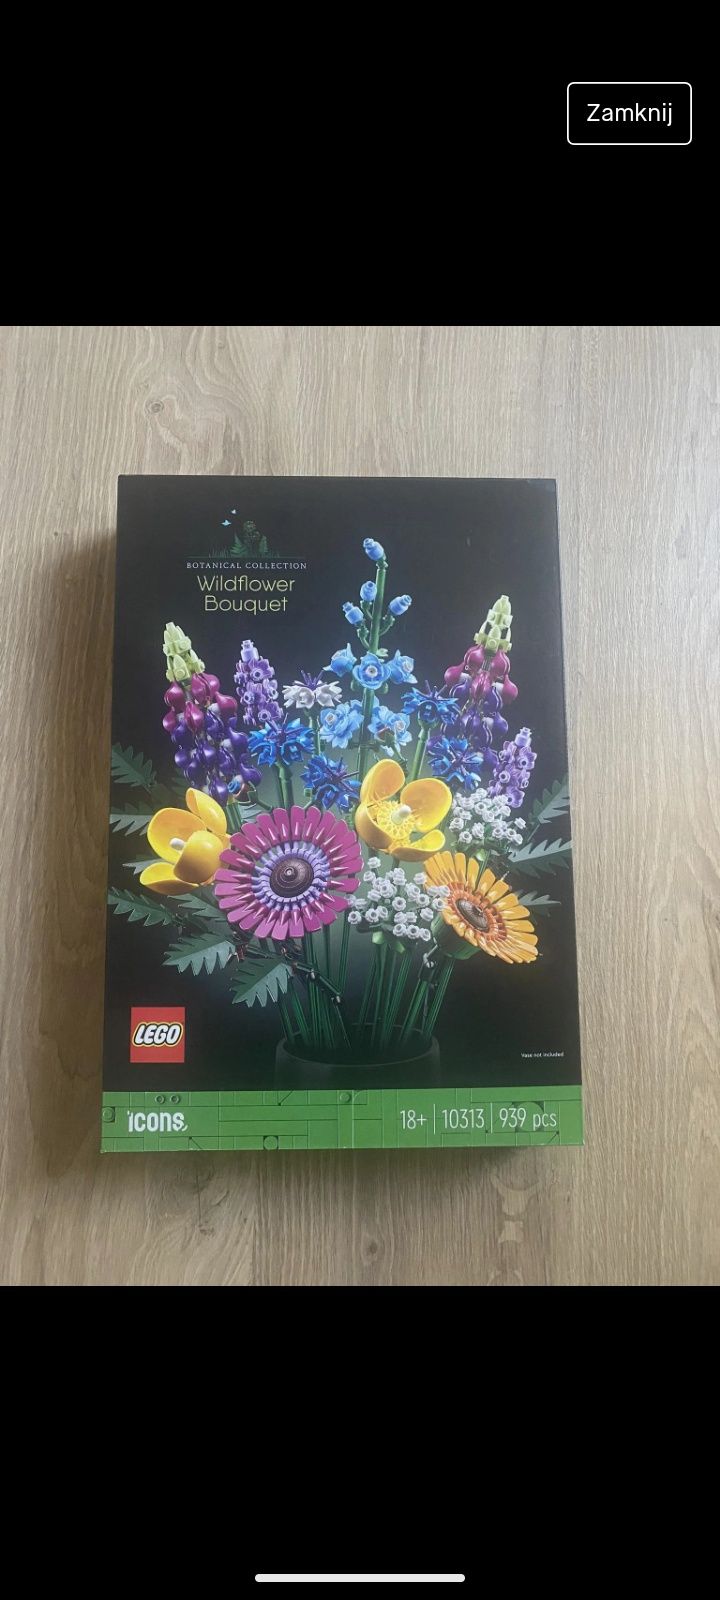 Lego kwiaty bukiet wildflower bouquet zestaw nowy botanical collection